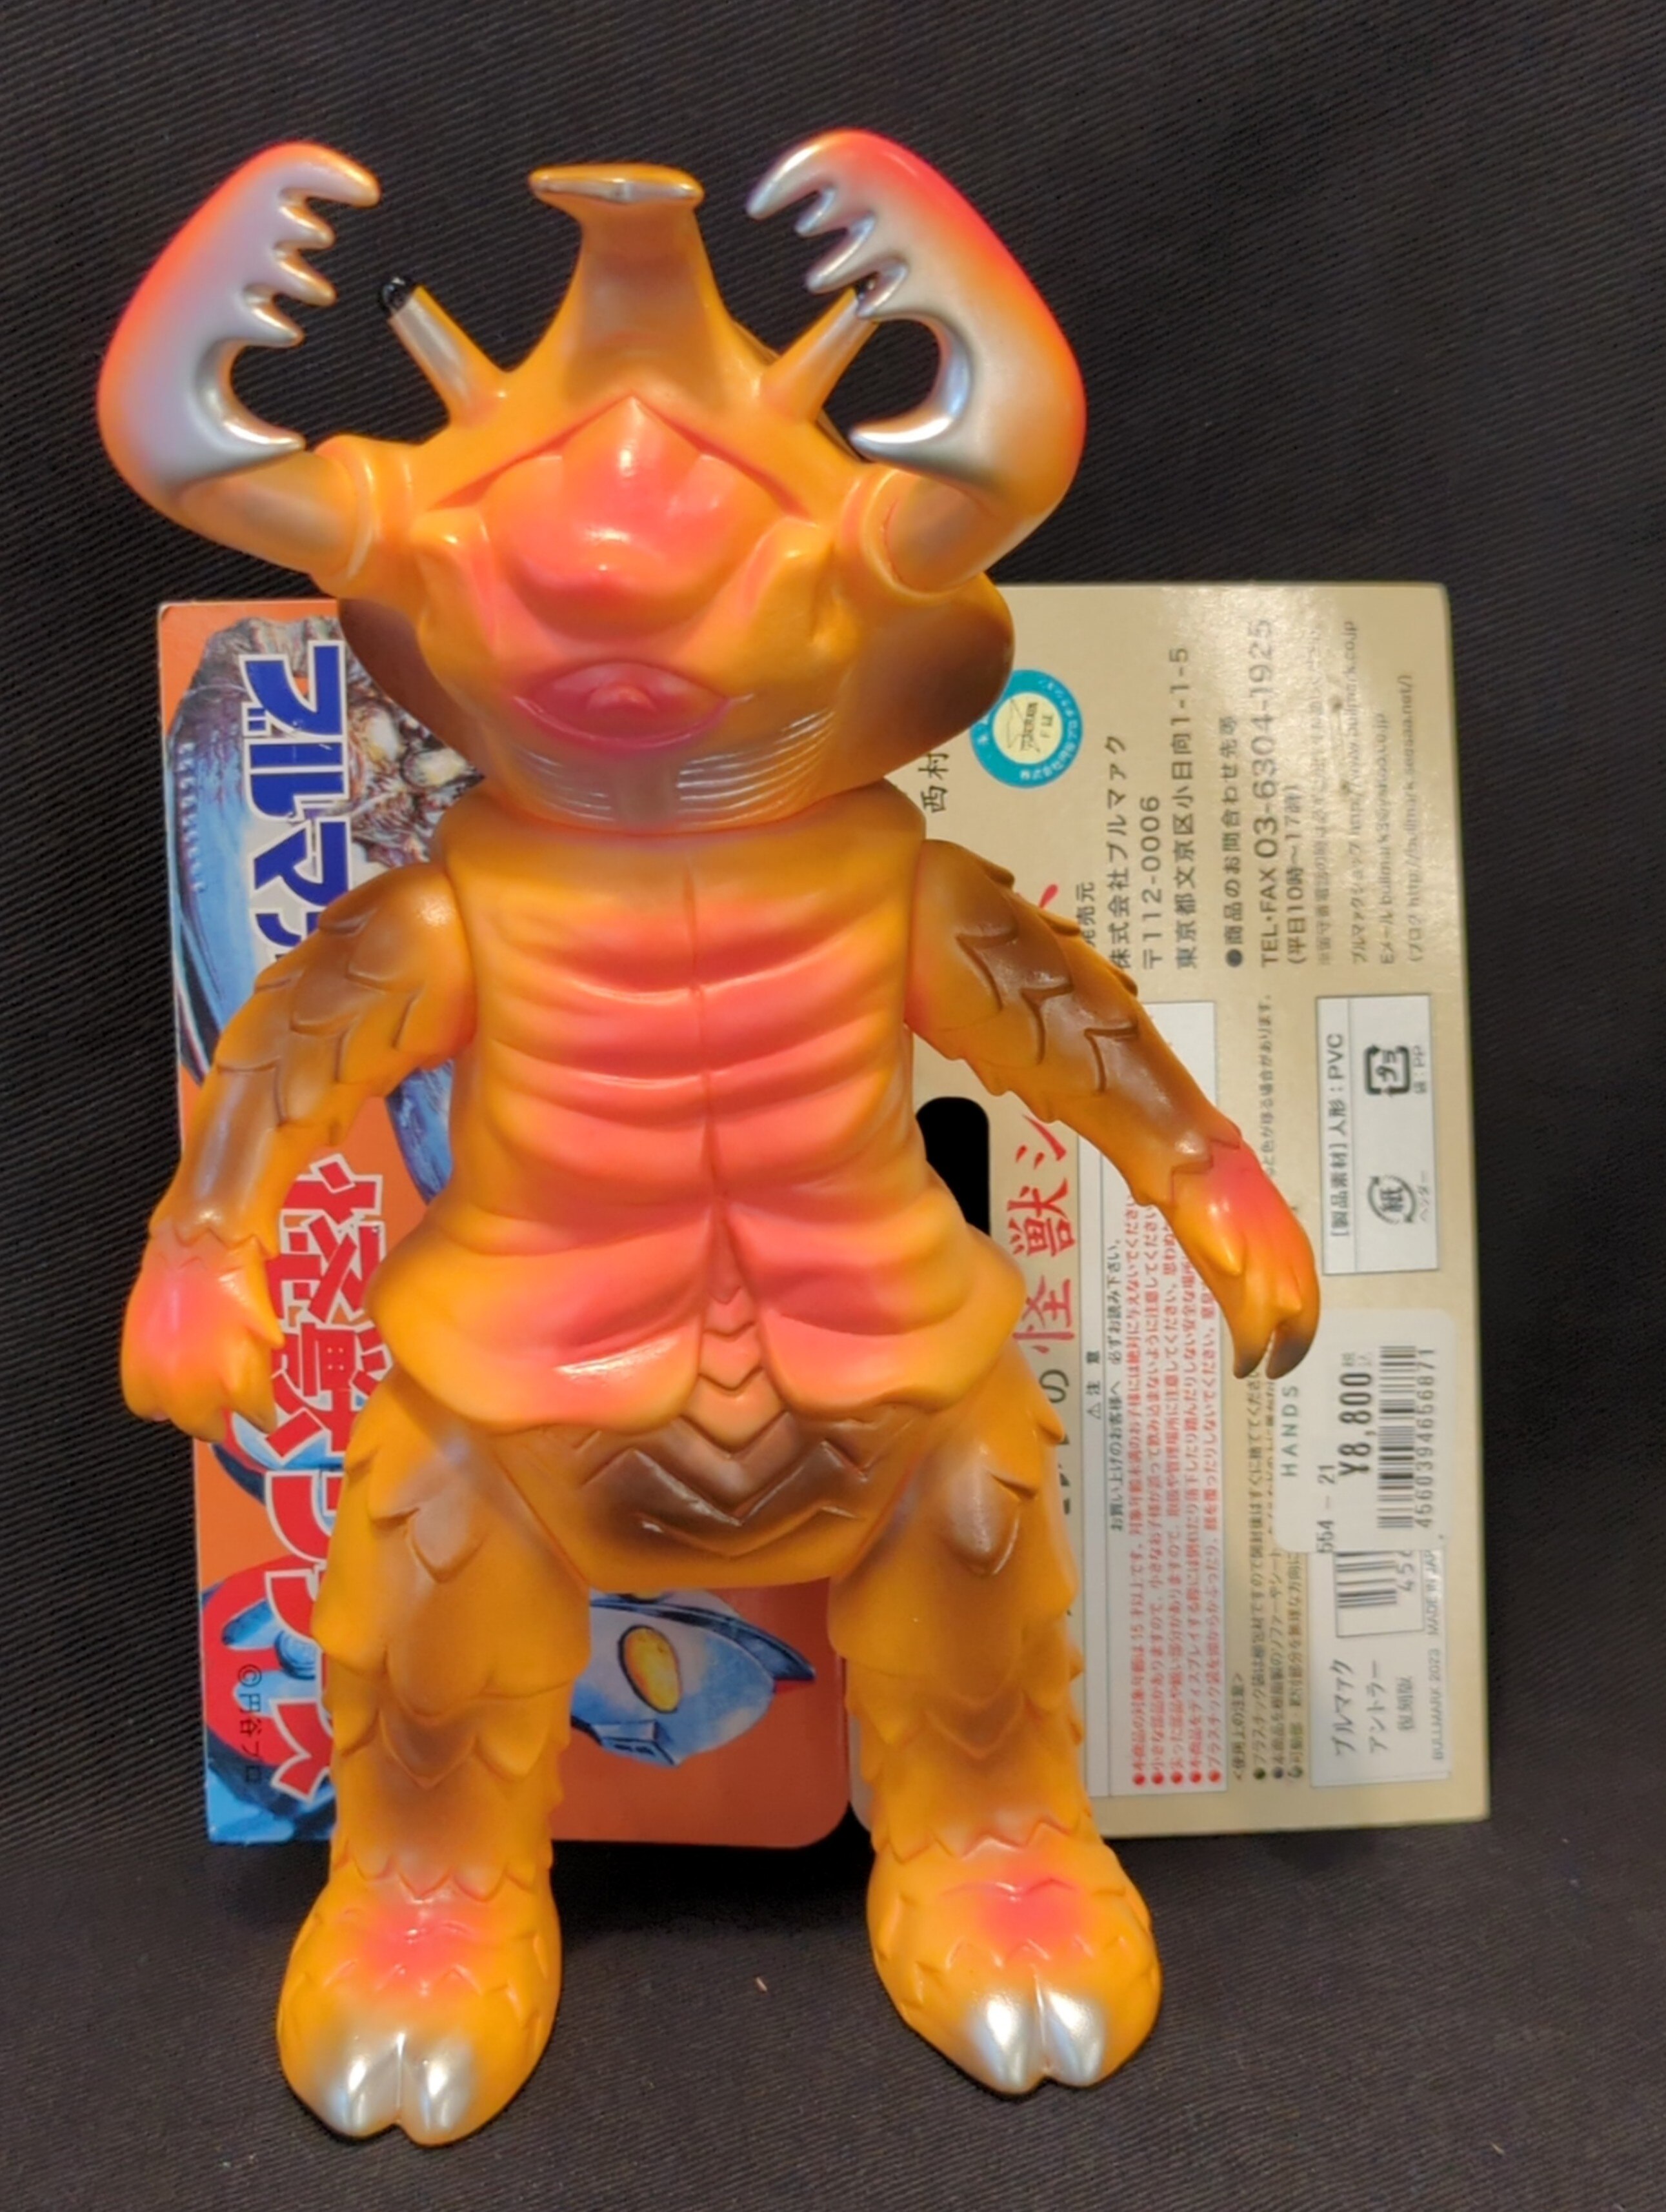 ブルマァク 復刻版怪獣シリーズ アントラー オレンジ成型&赤&銀&茶